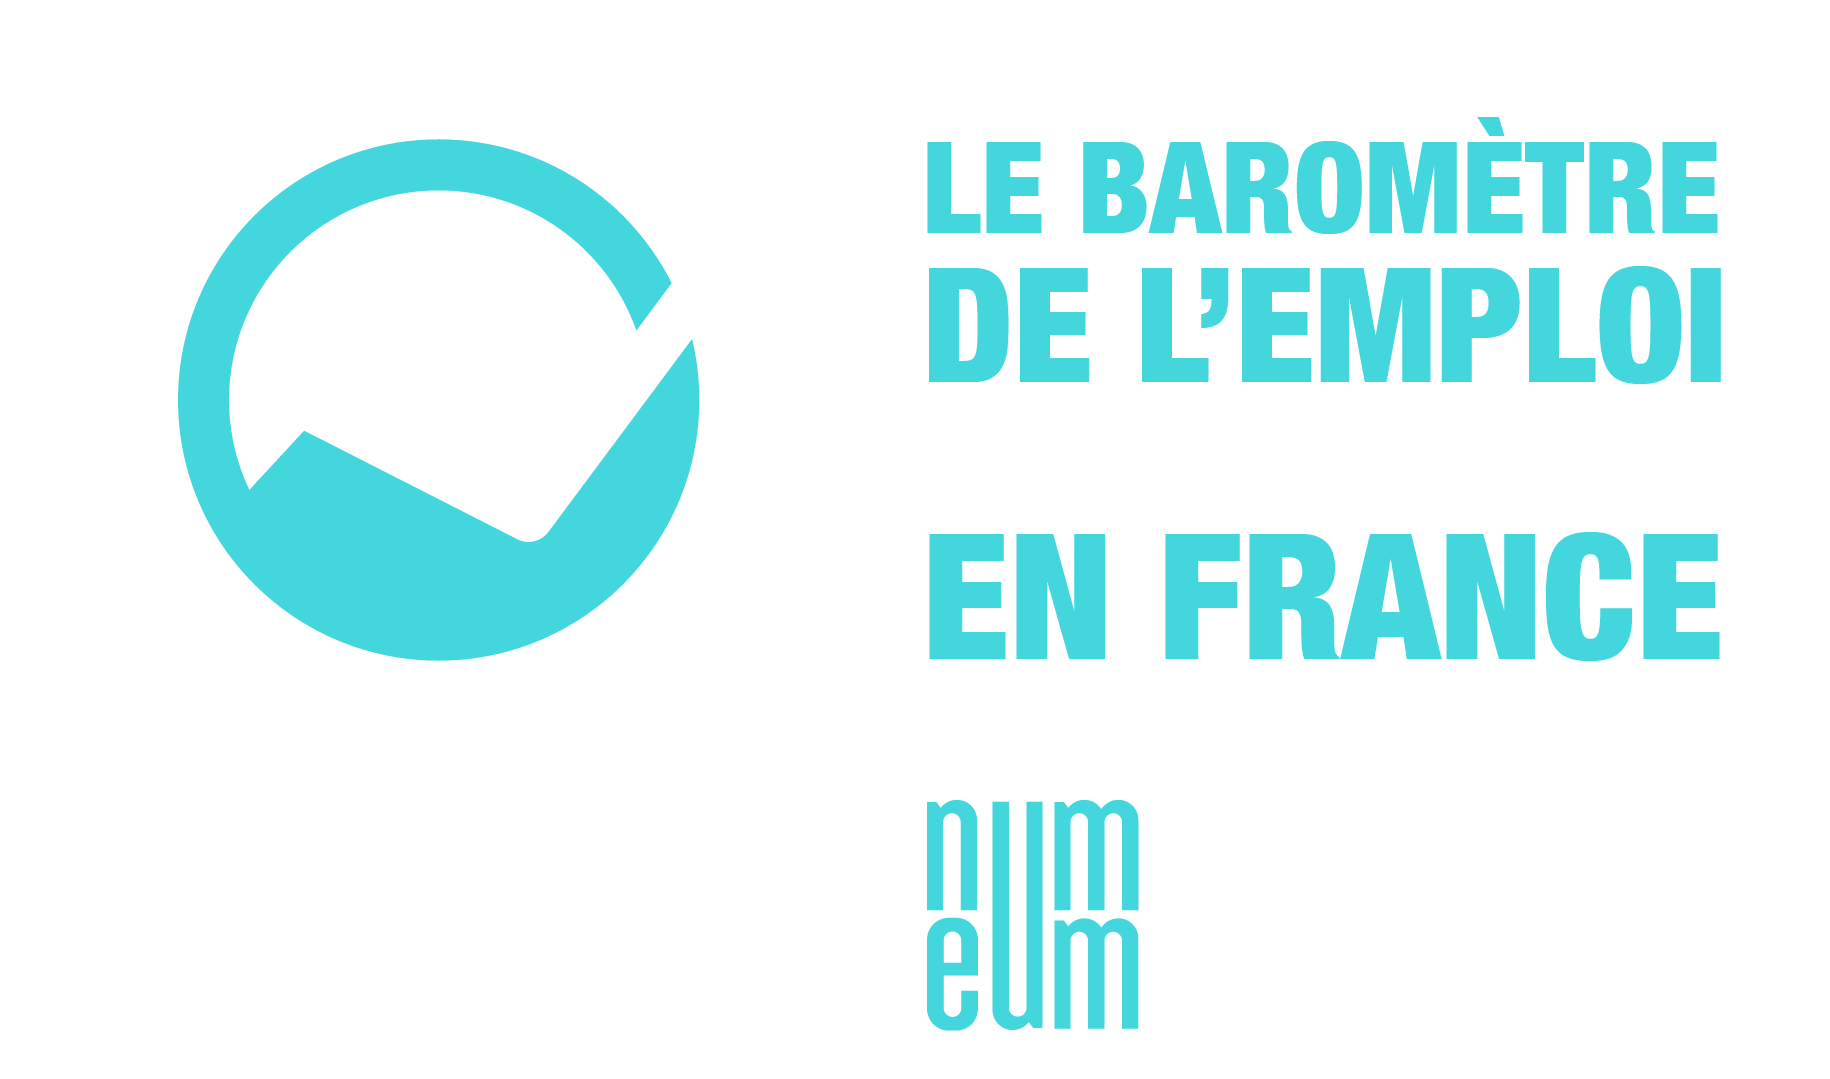 Le baromètre de l'emploi des startups en France